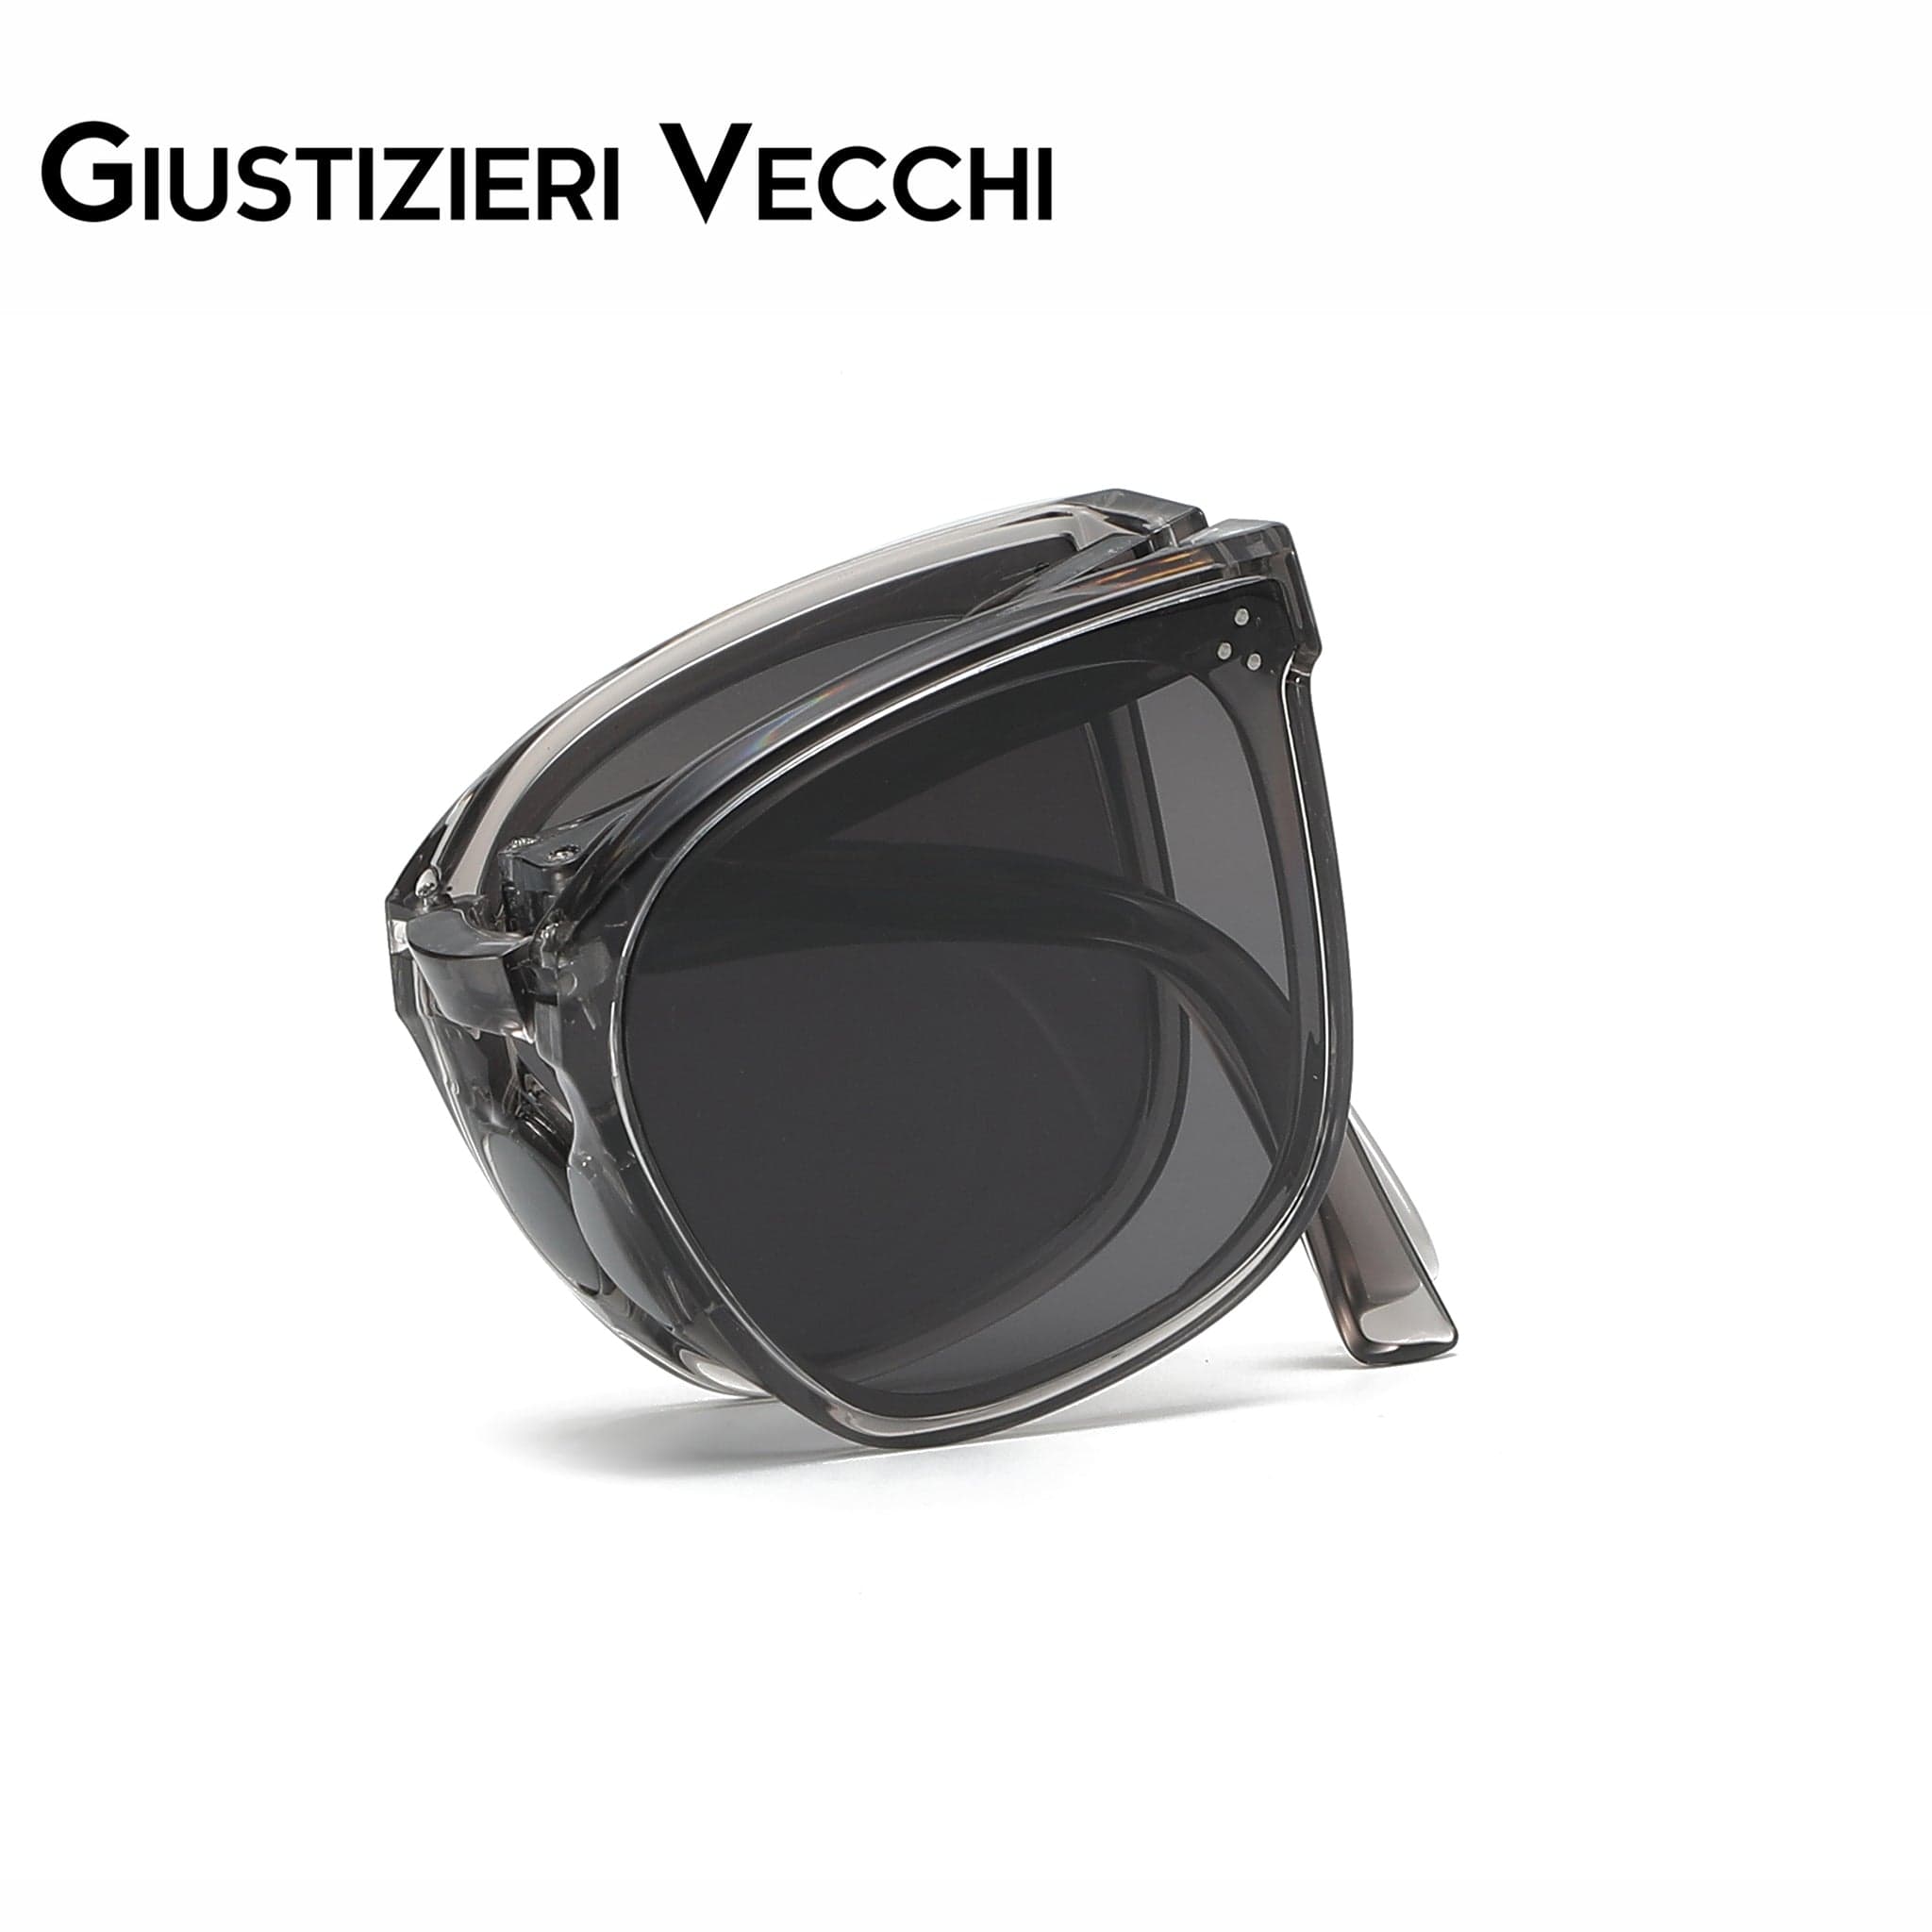 GIUSTIZIERI VECCHI Sunglasses Medium / Sea Glass Grey Sassy Chic Cinque